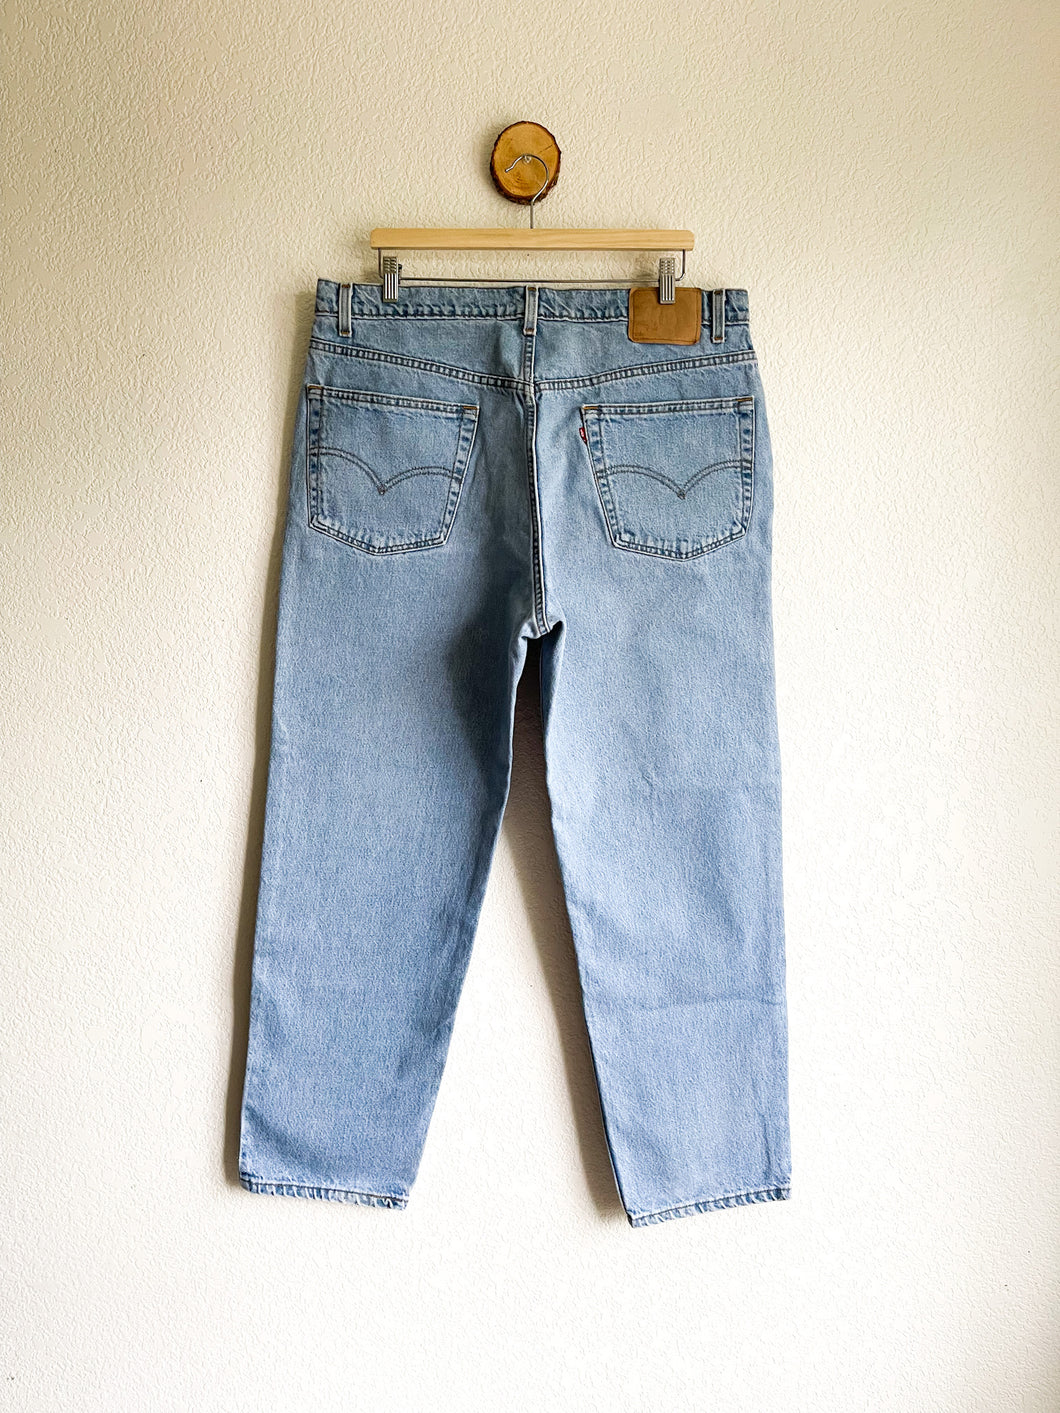 Vintage Levi's 550 Jeans - 38